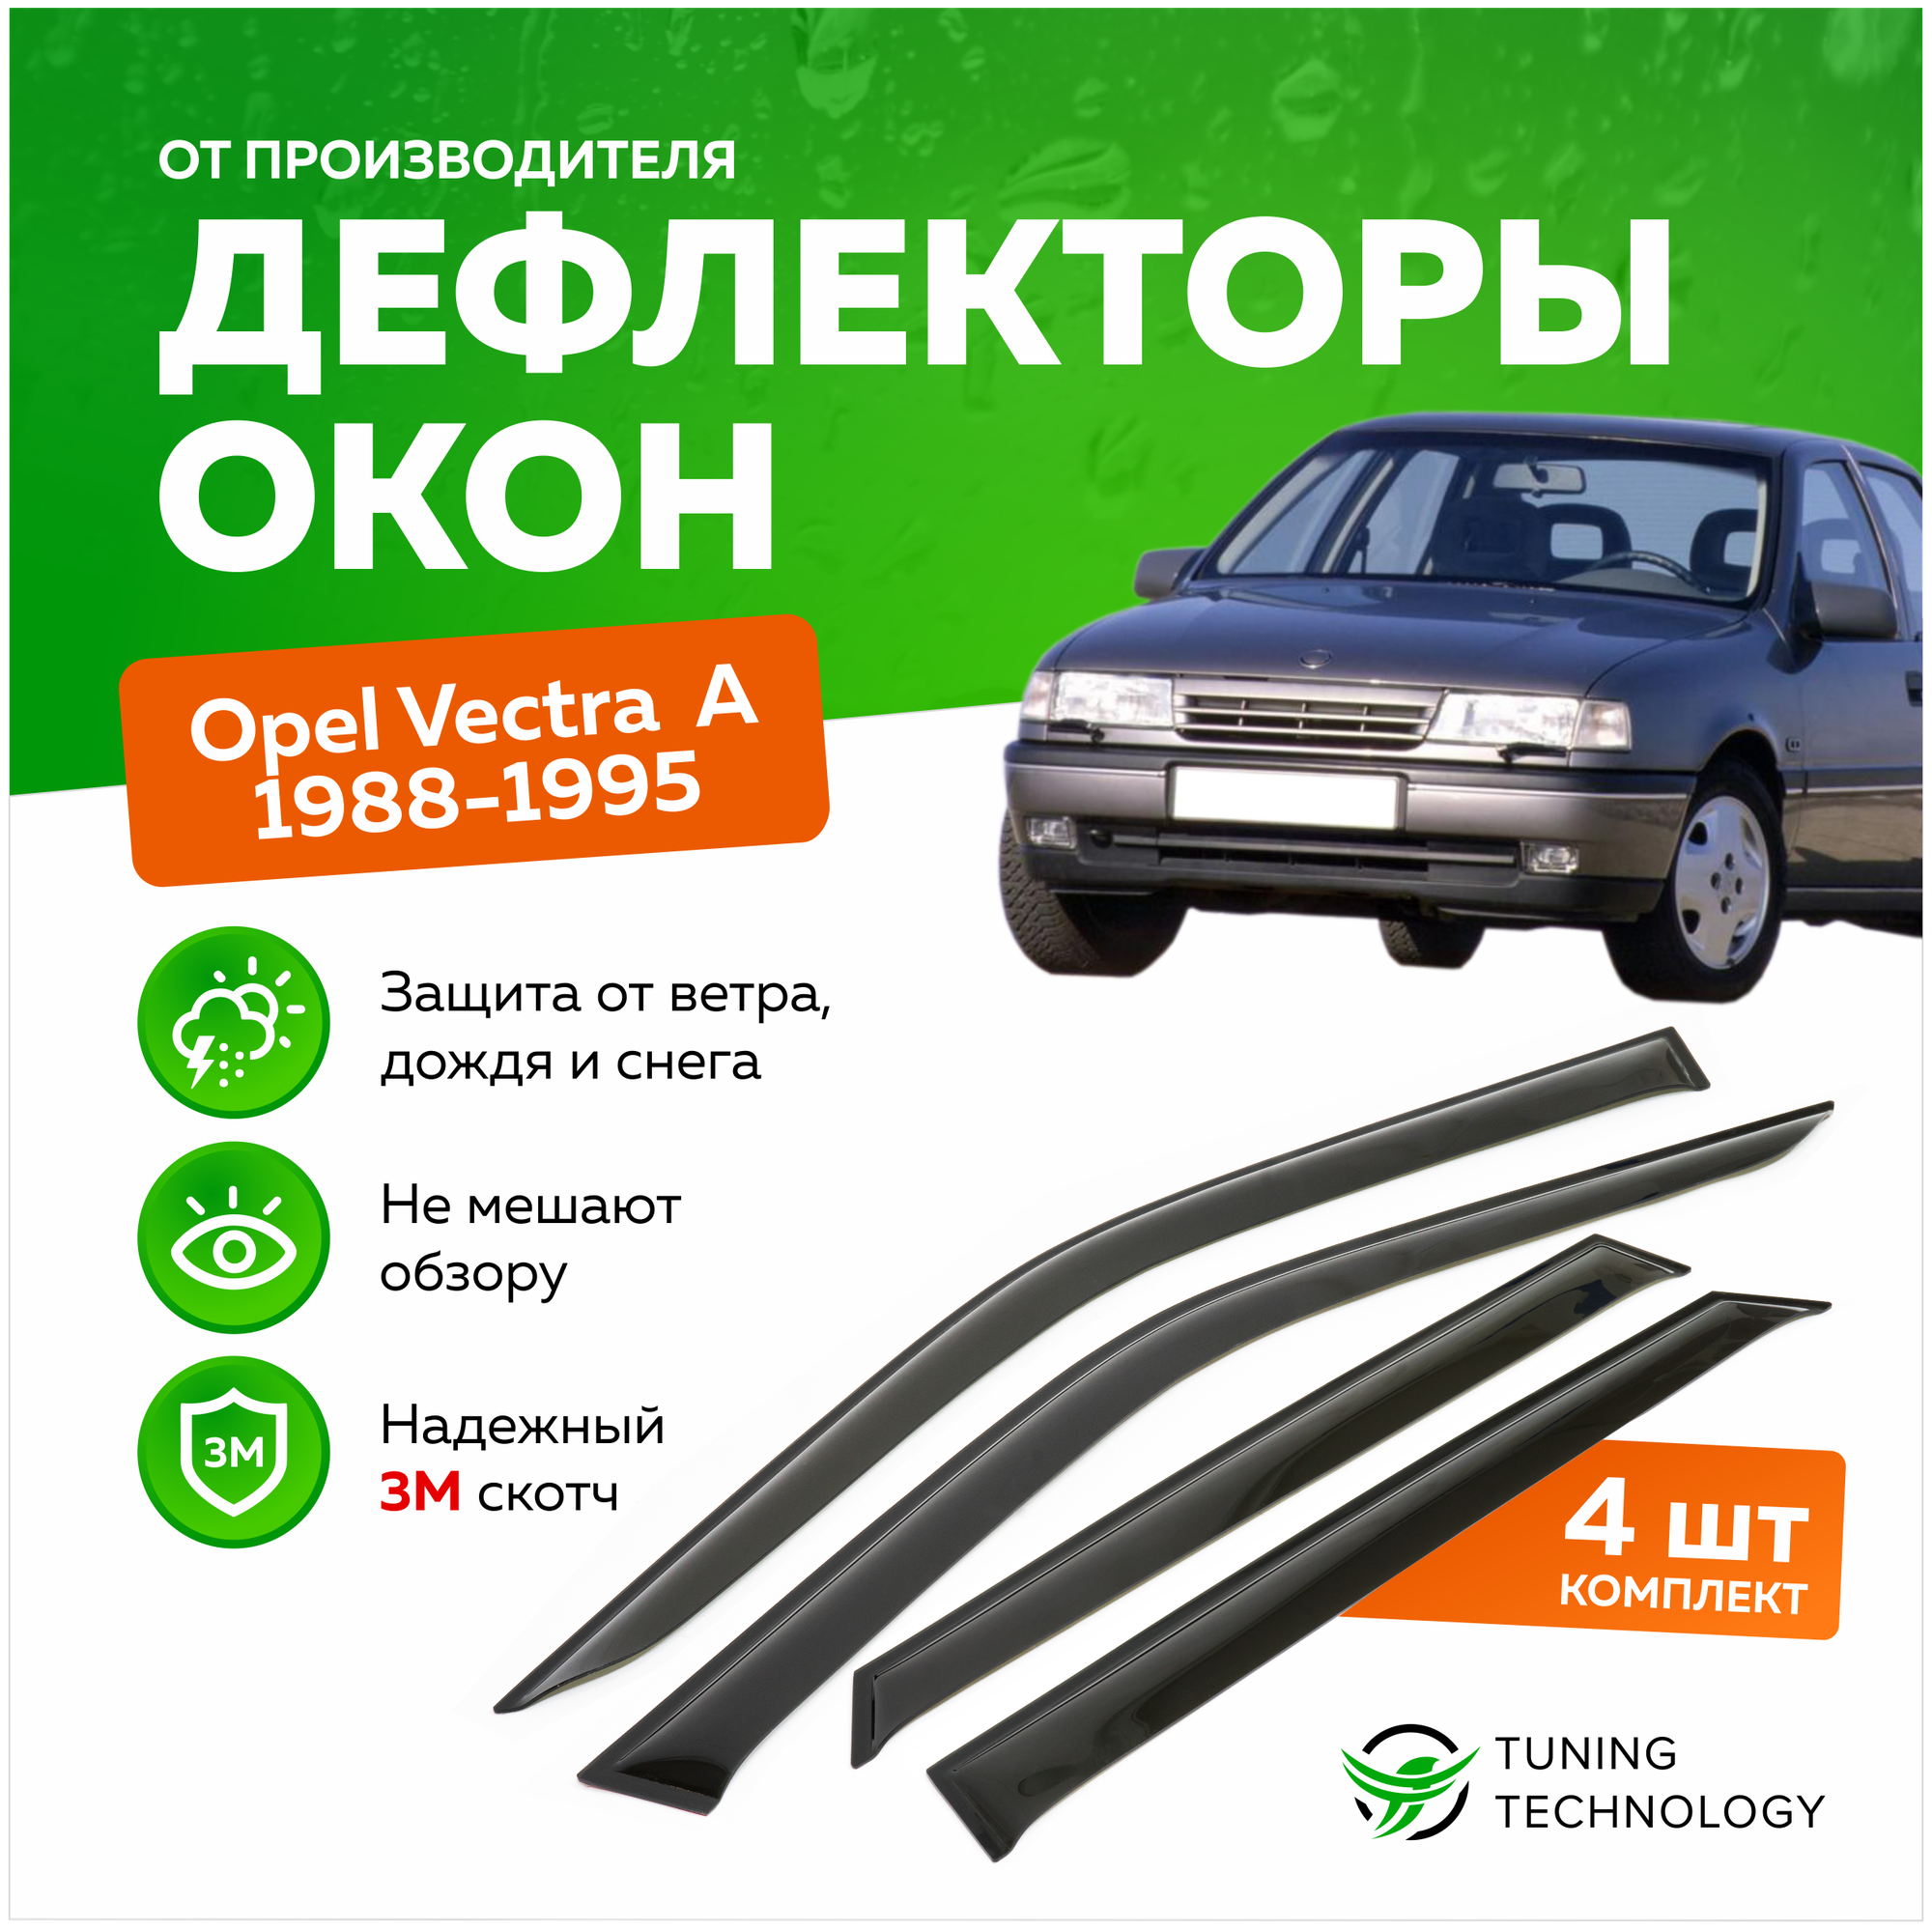 Дефлекторы боковых окон Opel Vectra (Опель Вектра) A седан 1988-1995 ветровики на двери автомобиля ТТ